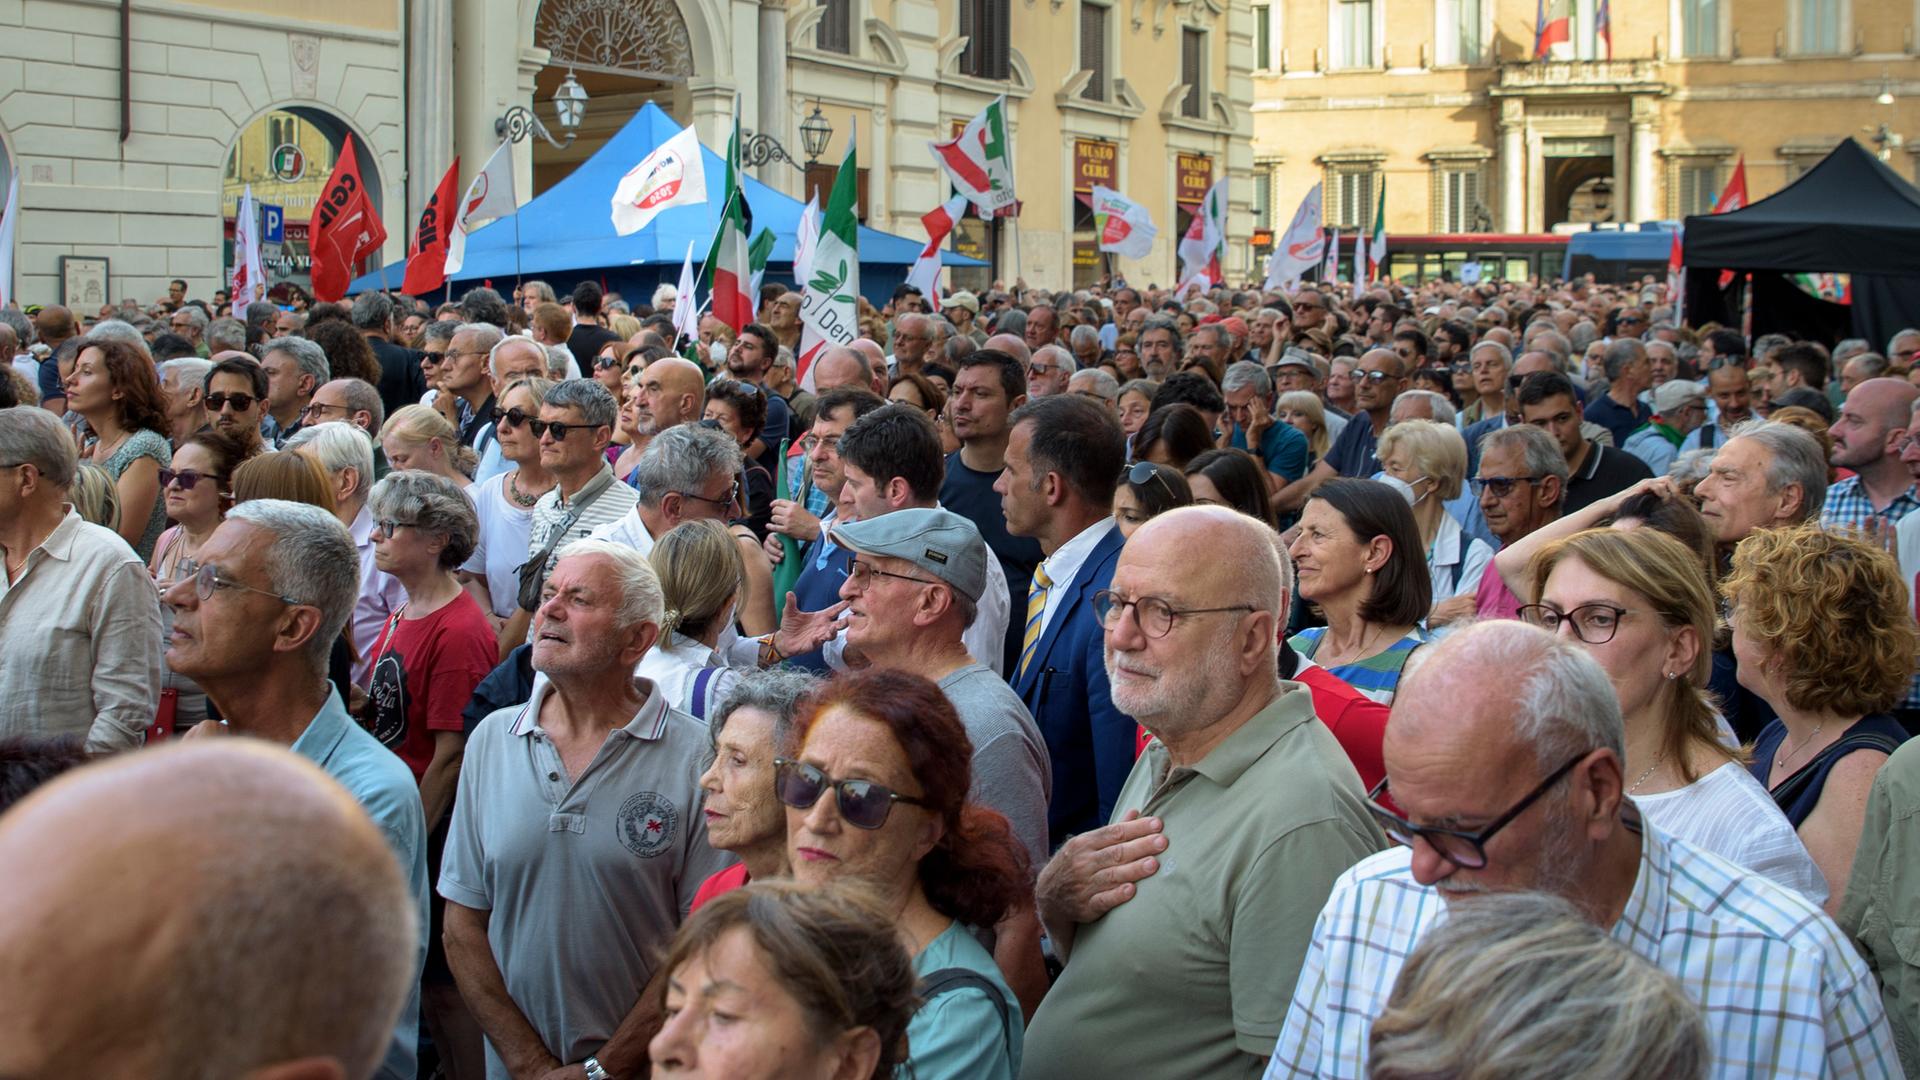 Menschen stehen dicht gedrängt auf einem Platz in Rom, manche halten Fahnen oder Transparente